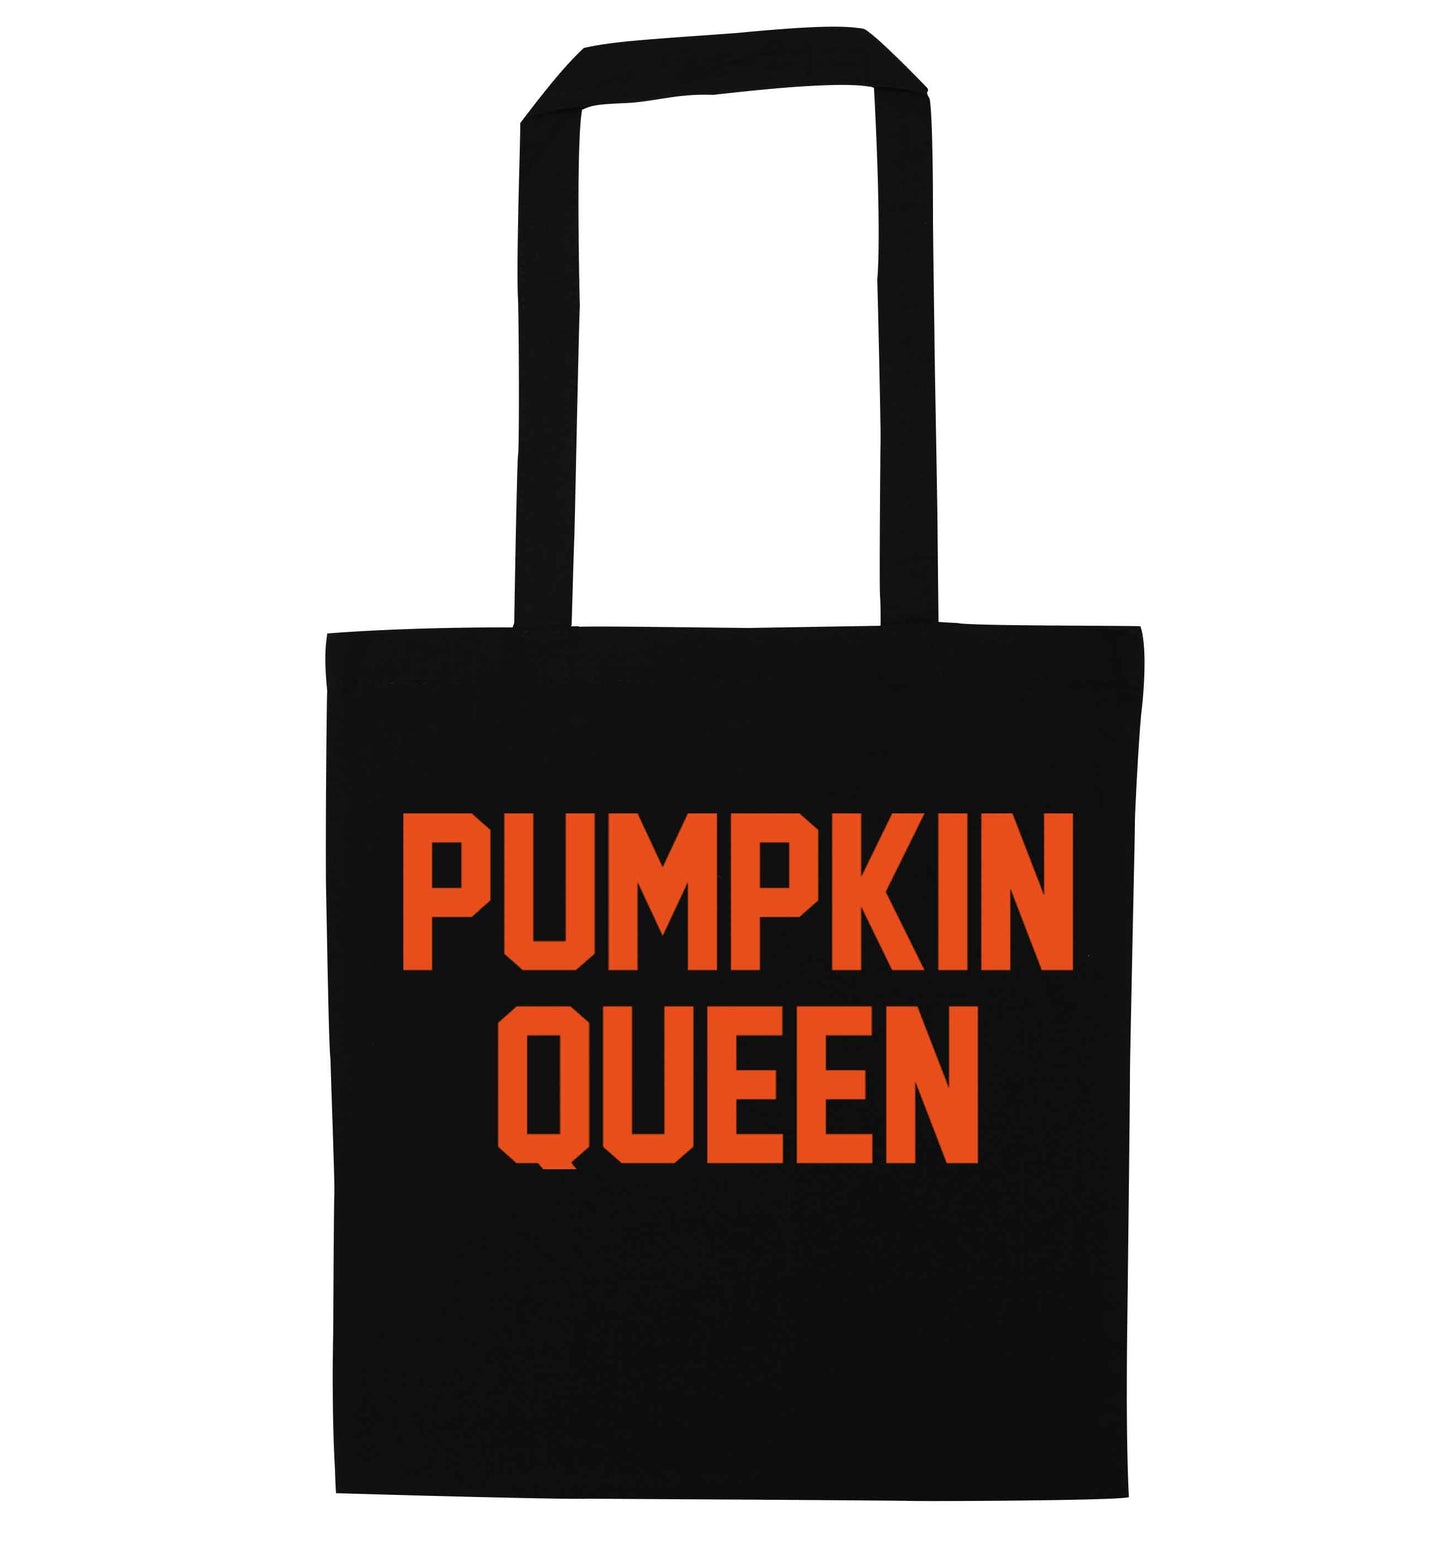 Pumpkin Queen black tote bag